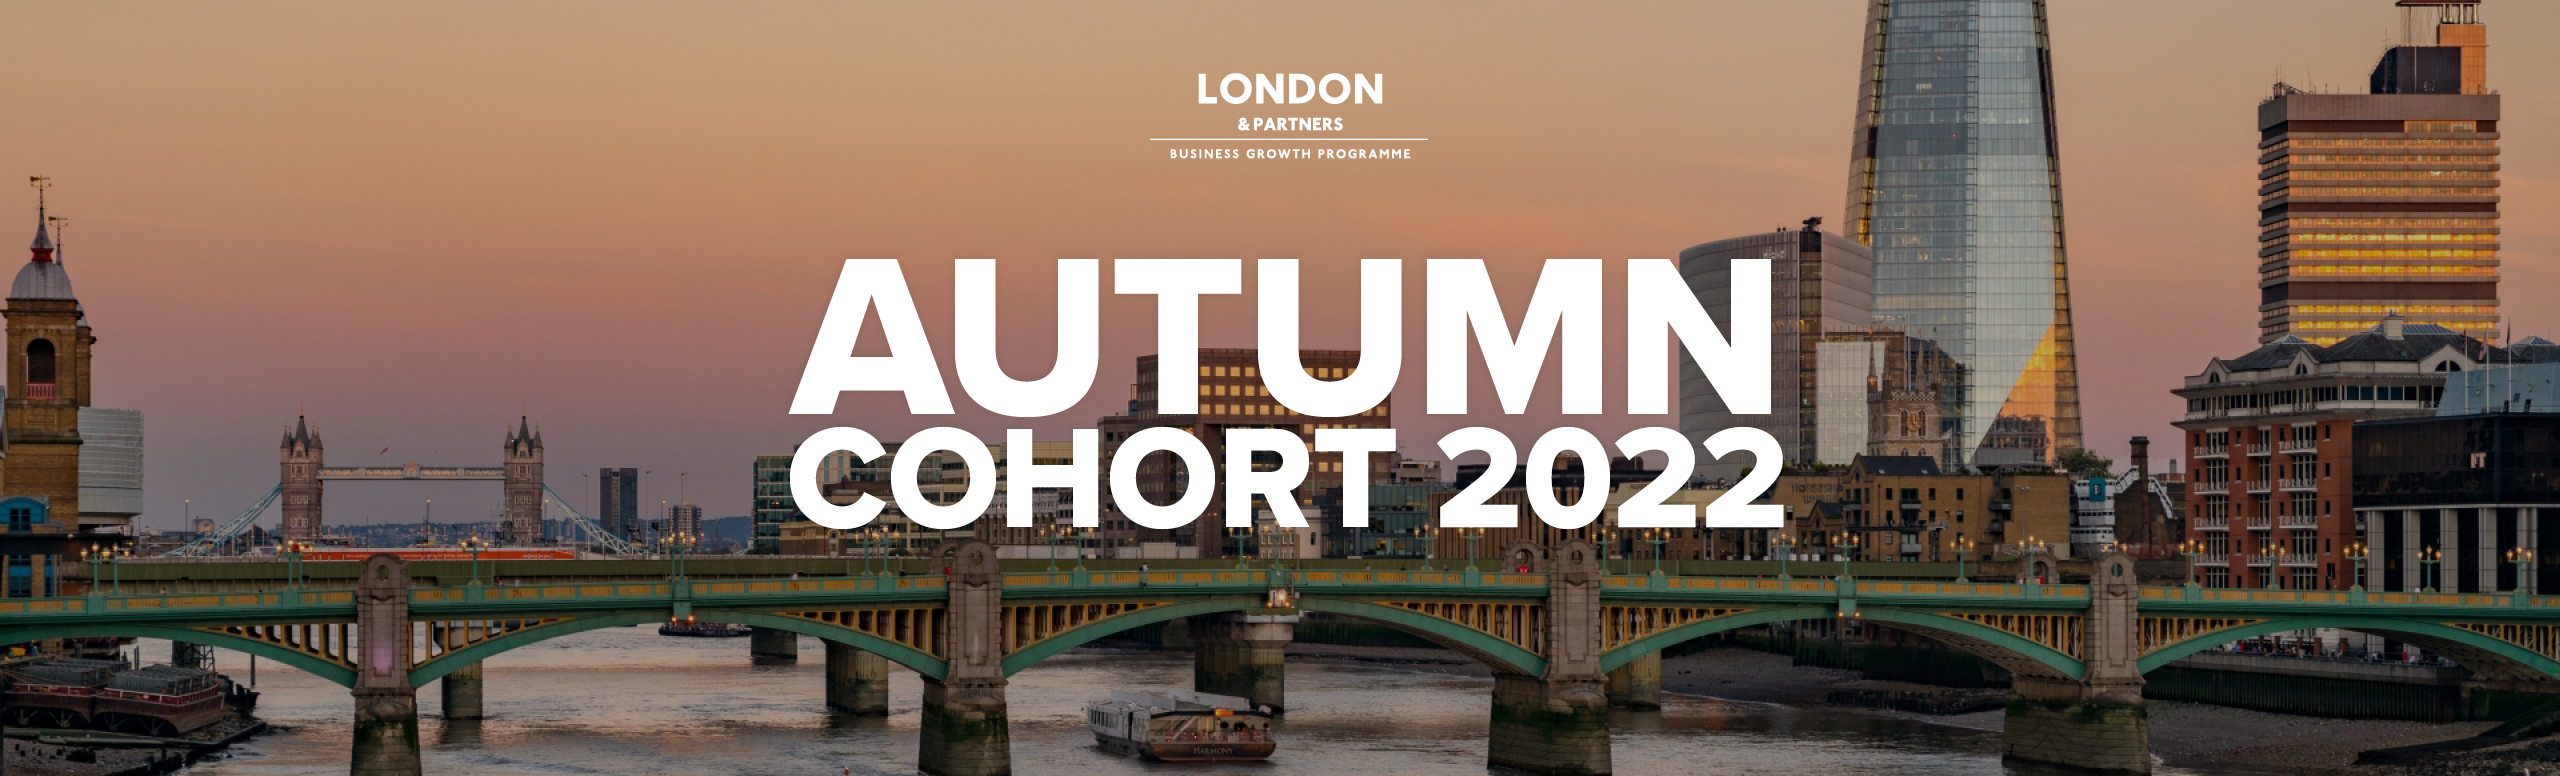 Autumn 2022 Cohort